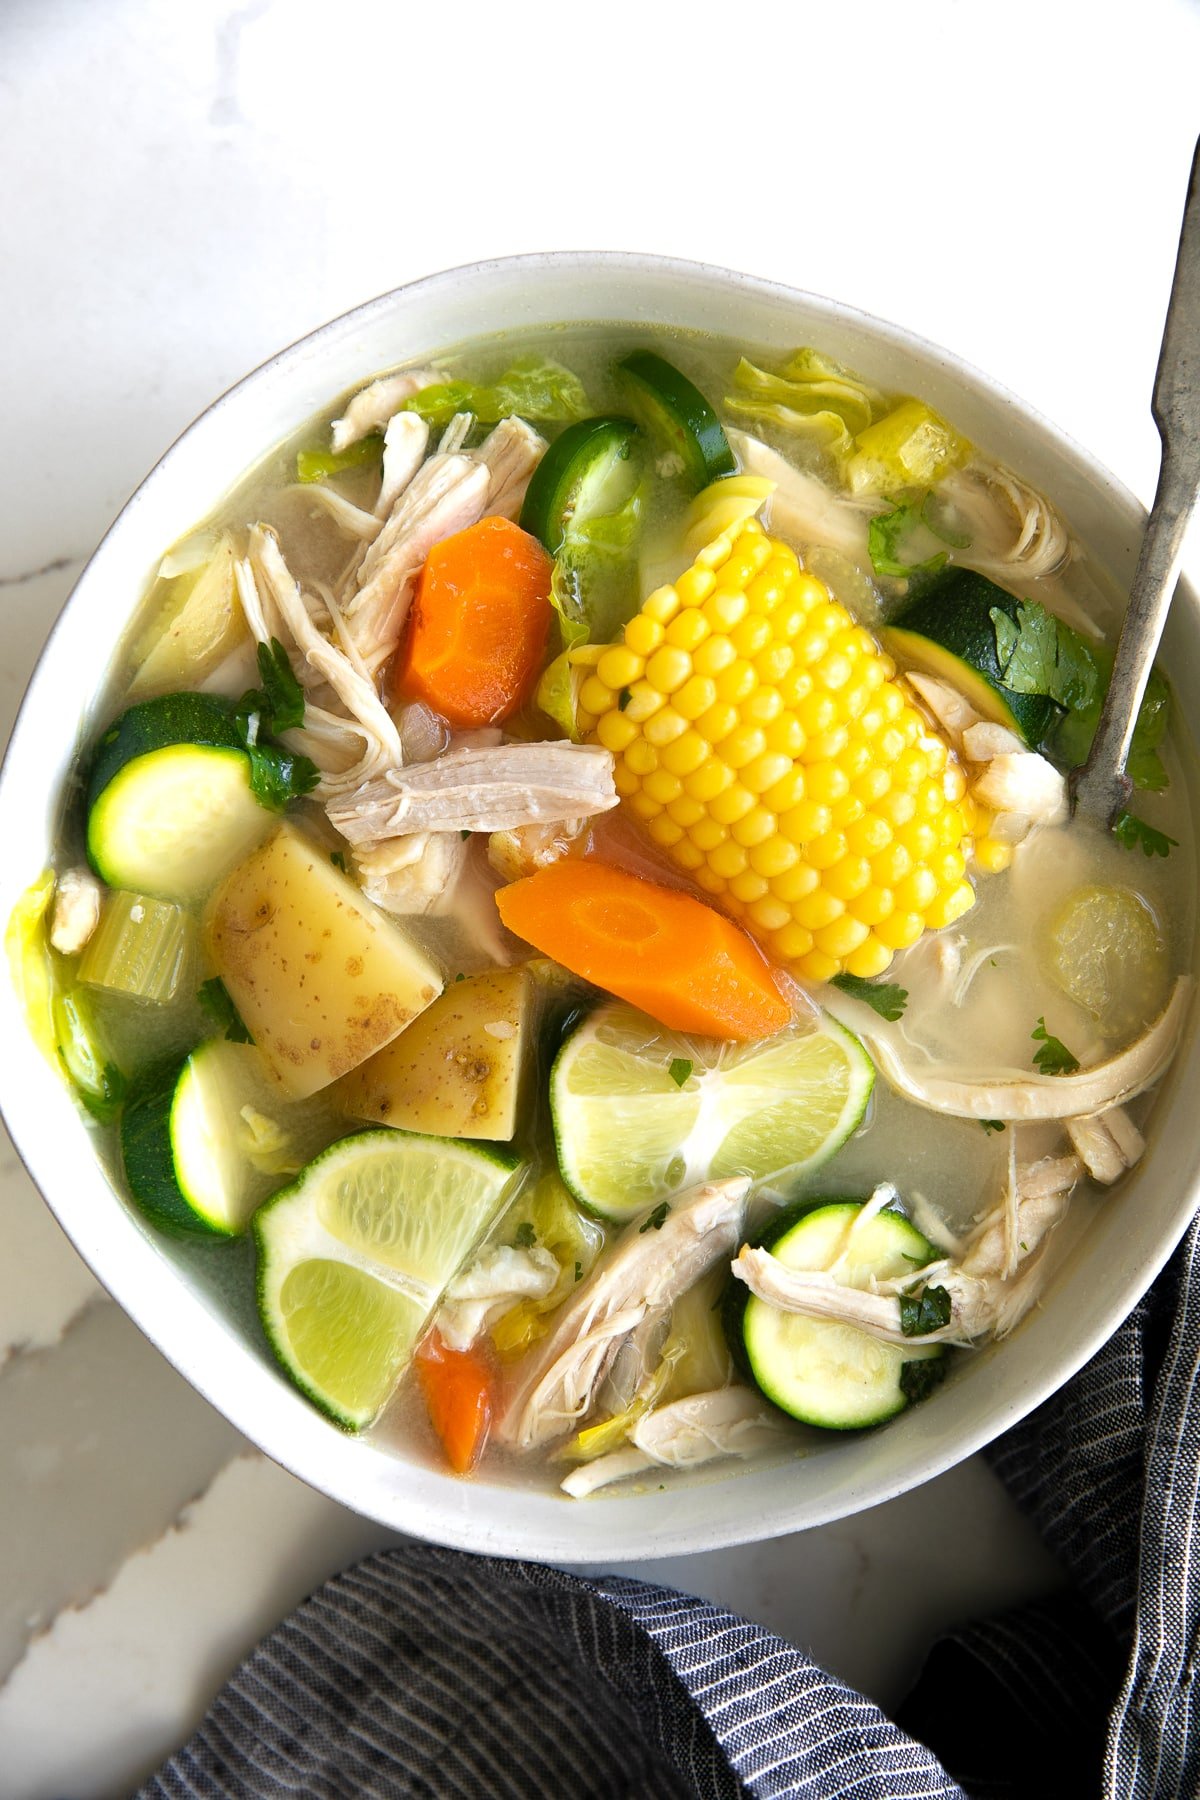 Caldo de Pollo Recipe (Mexican Chicken Soup) - The Forked Spoon